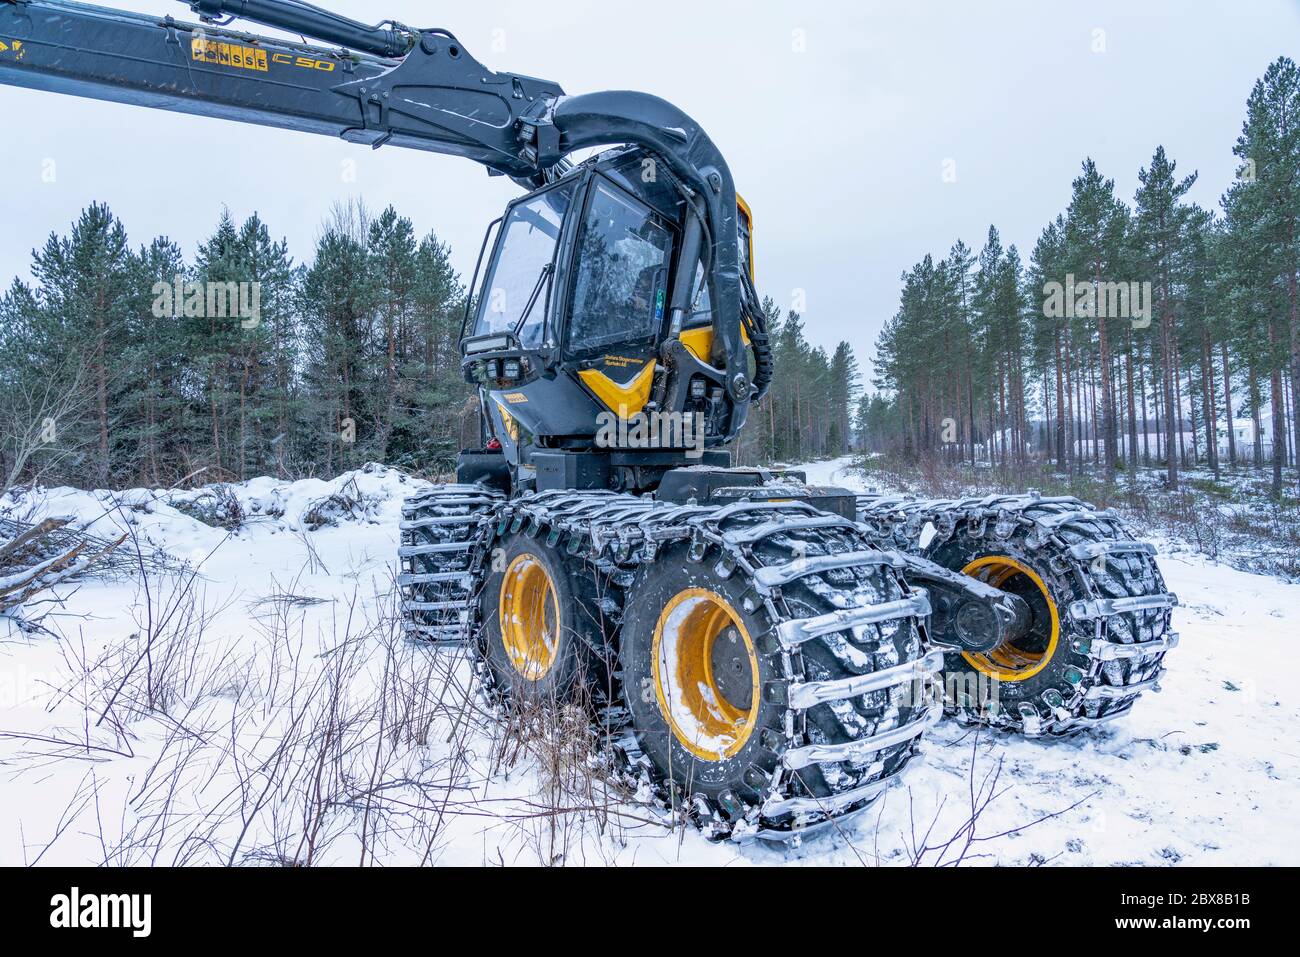 Umea, Suède 10 NOVEMBRE 2019 : machine forestière moderne hautes performances pour la coupe, l'empilage et l'exploitation forestière des forêts, offrant un rendement maximal et un rendement optimal Banque D'Images